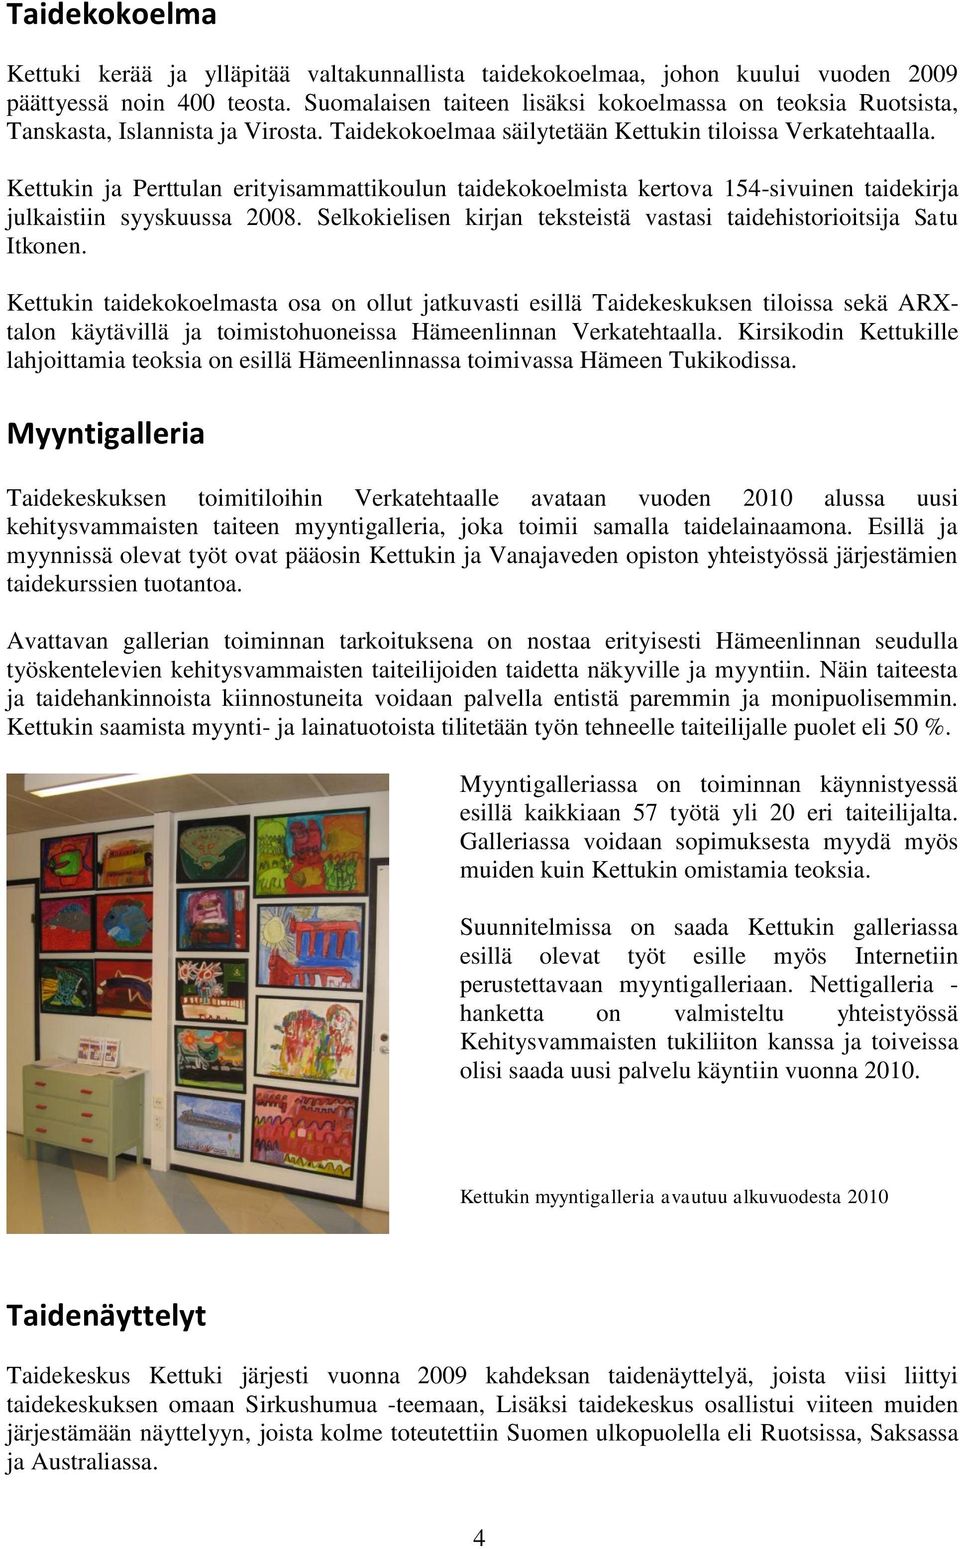 Kettukin ja Perttulan erityisammattikoulun taidekokoelmista kertova 154-sivuinen taidekirja julkaistiin syyskuussa 2008. Selkokielisen kirjan teksteistä vastasi taidehistorioitsija Satu Itkonen.